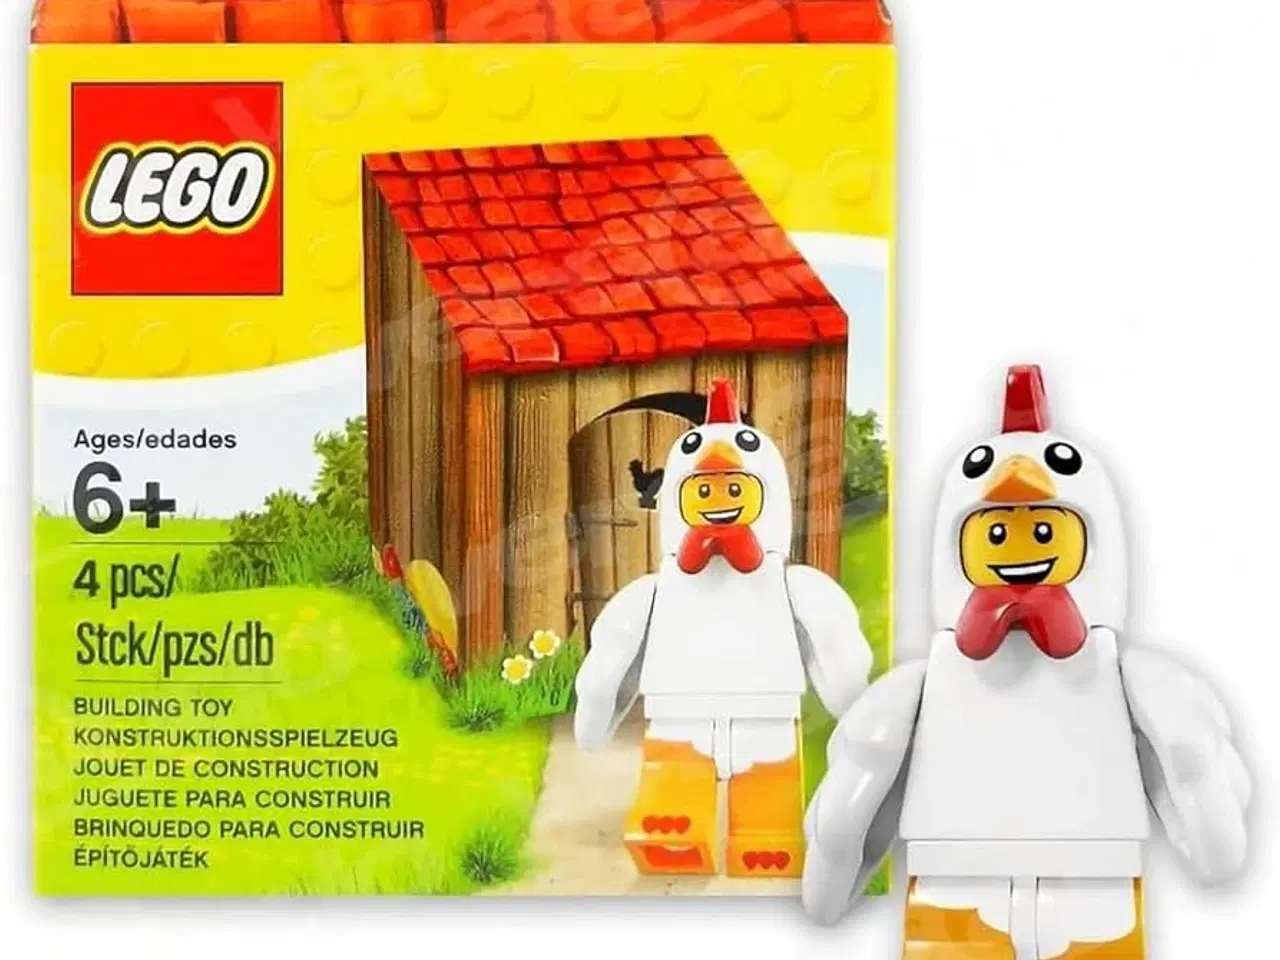 Billede 1 - Lego påske kylling minifigur - udgået 2016 - ny